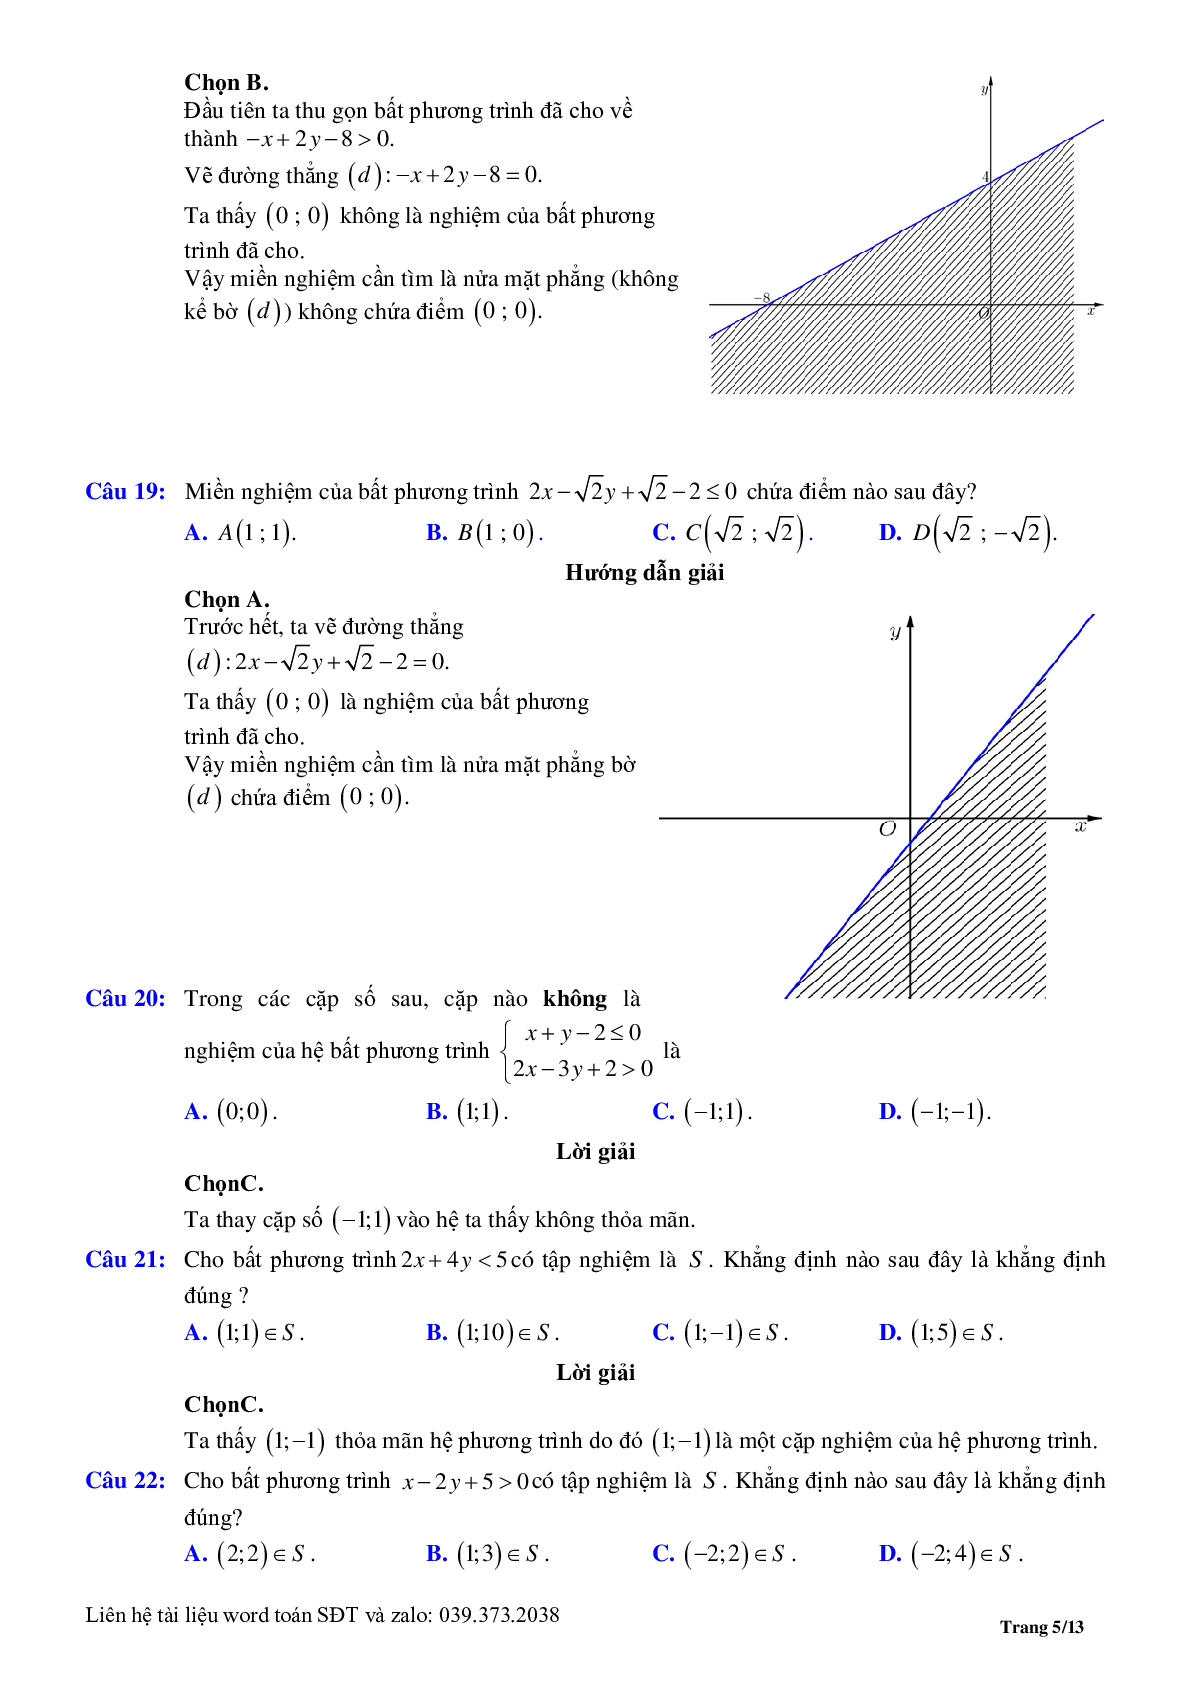 Chuyên đề bất phương trình, hệ phương trình bậc nhất hai ẩn (trang 5)